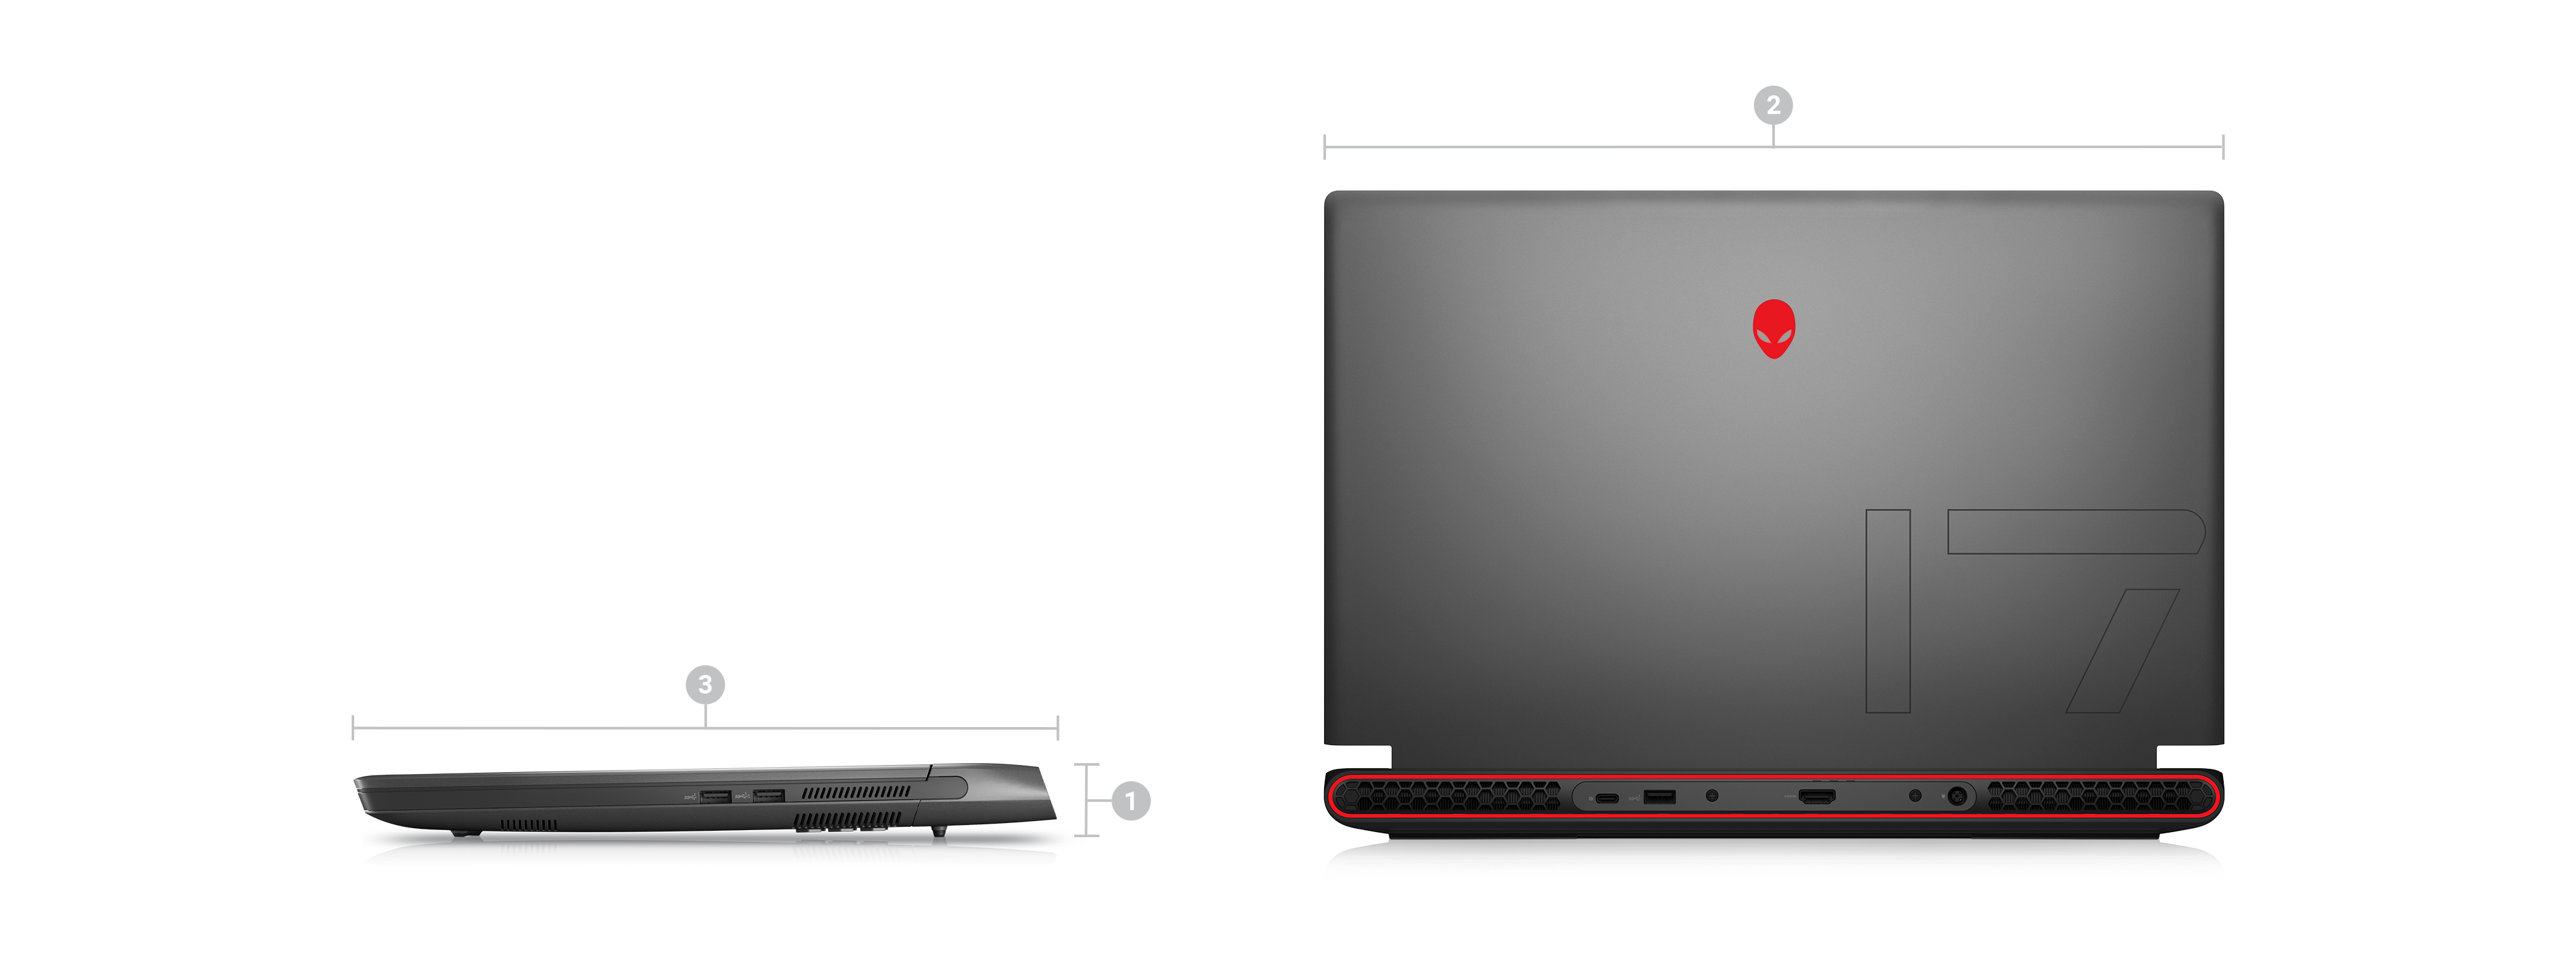 Bild von zwei Dell Alienware M17 R5 Gaminglaptops mit Zahlen von 1 bis 3 zur Kennzeichnung der Produktabmessungen und des Gewichts.